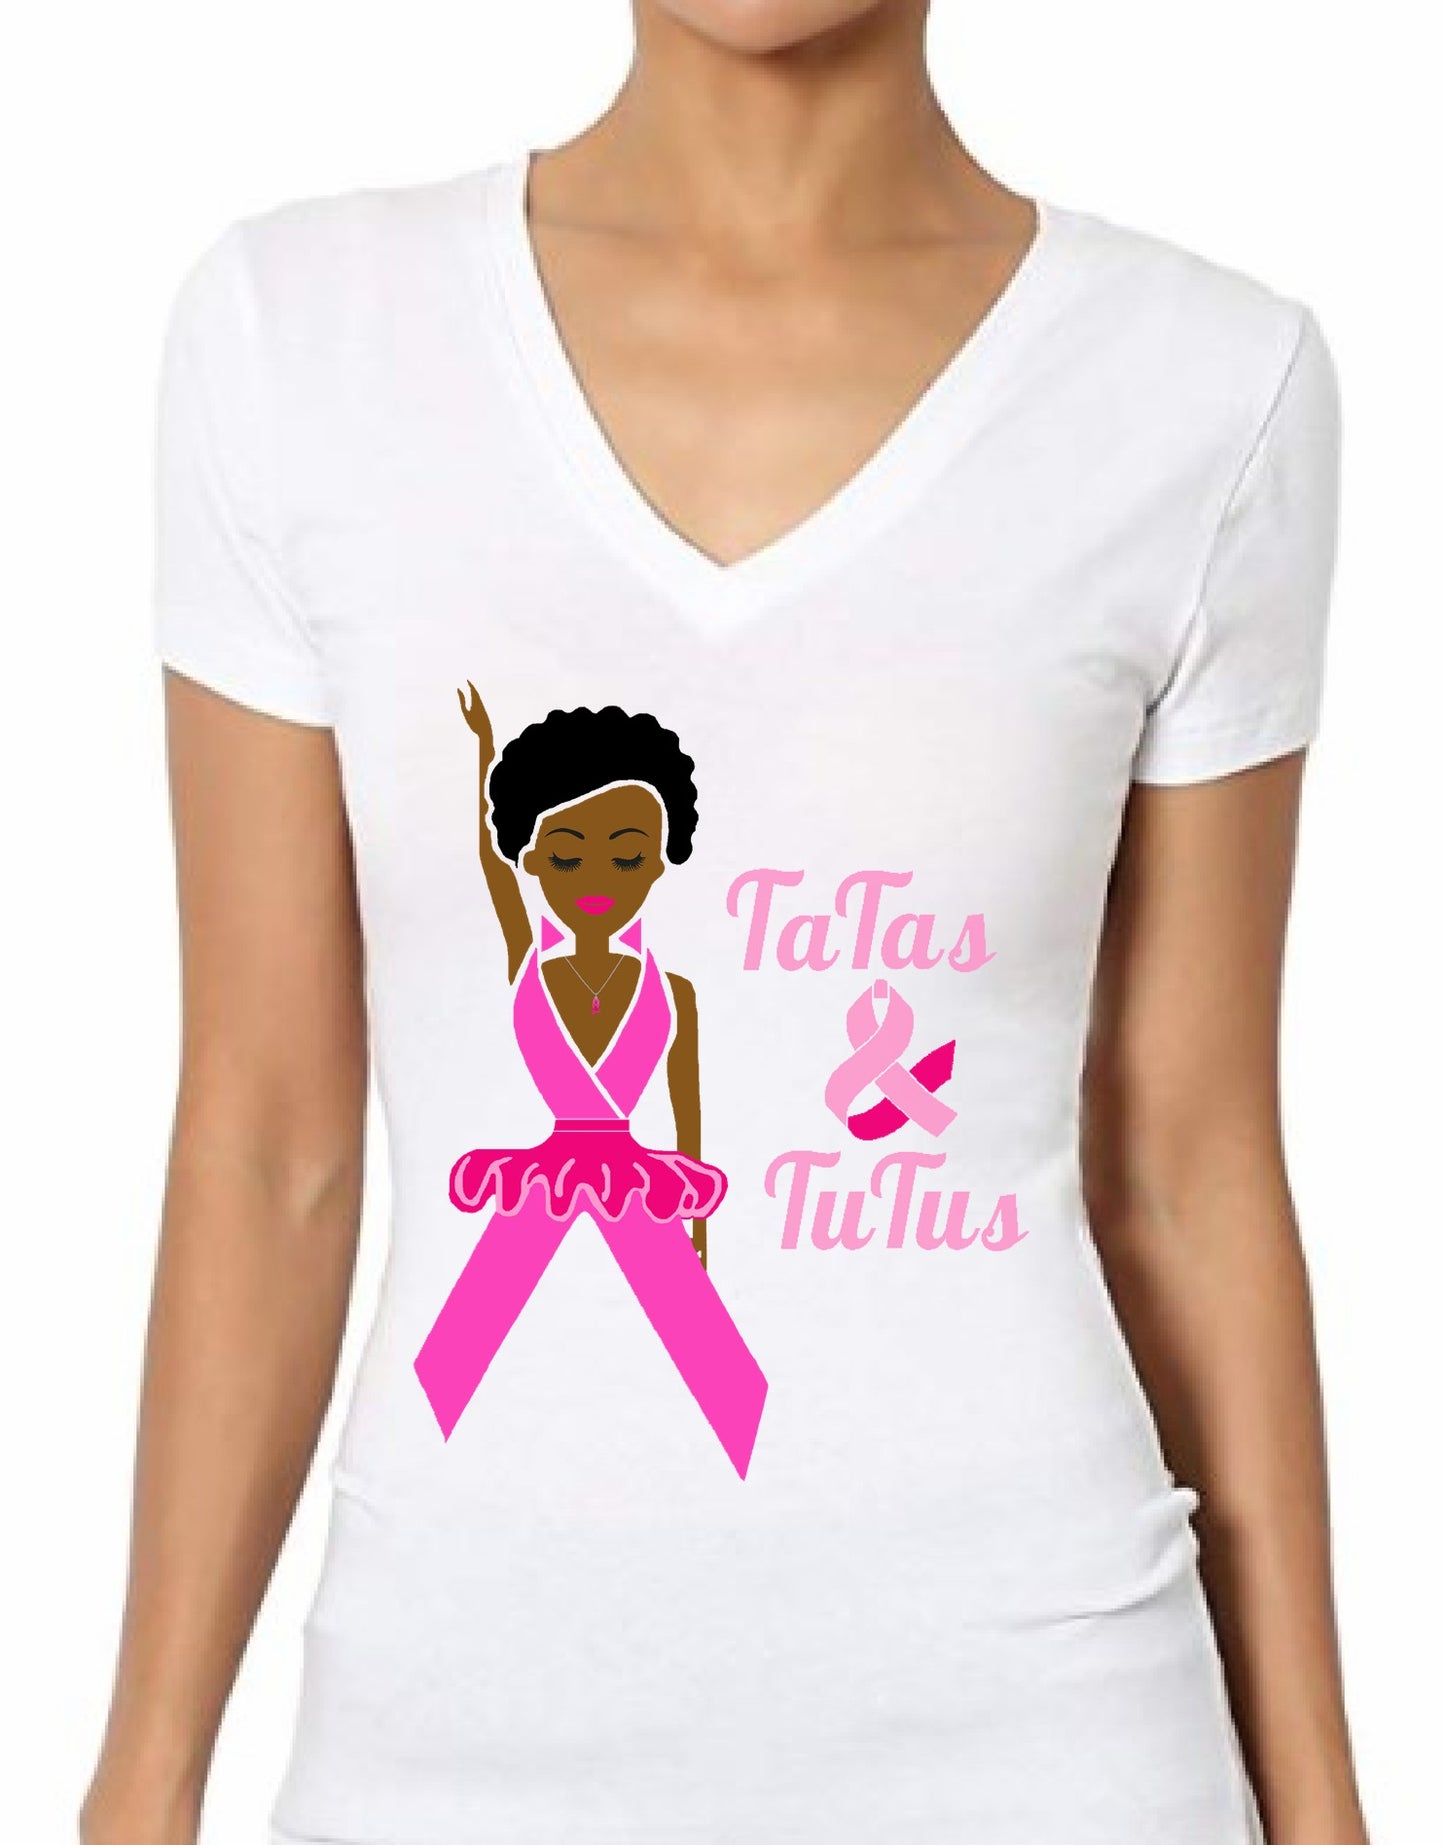 Tatas &Tutus Breast Cancer Awareness T-shirt